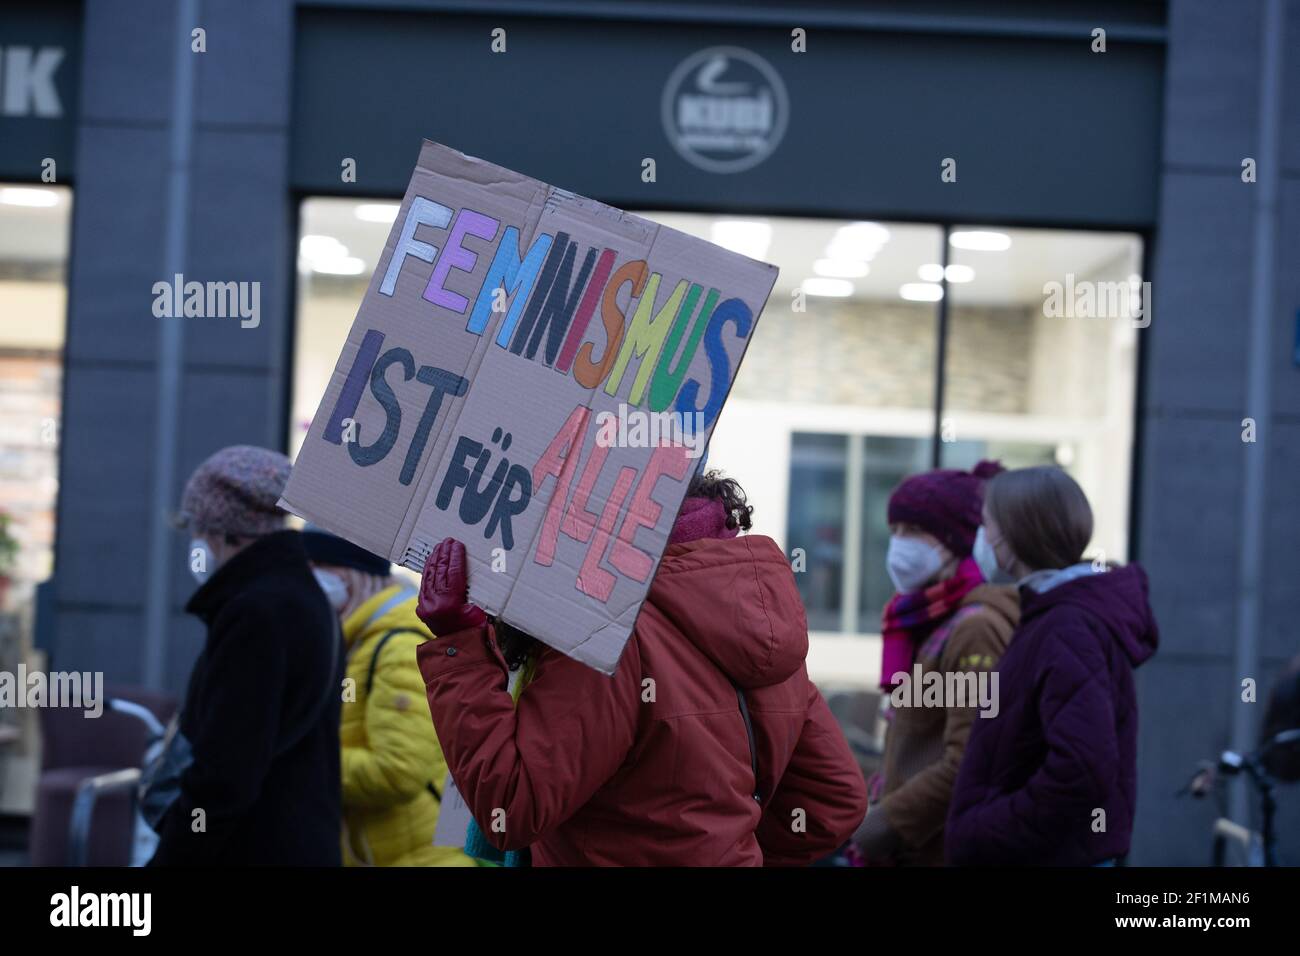 Demonstrantin hält Schild mit der Aufschrift: ' Feminismus ist für alle '. Am Weltfrauentag, dem 8.3.2021 haben sich in München um die 1000 Menschen versammelt, um für das Recht auf Schwangerschaftsabbrüche, gegen den Gender-Pay-Gap, Sexismus und Femizide zu demonstrieren. - On the international women's day March 8 2021 around 1000 people joined a demonstration in Munich, Germany to protest against sexism, the gender-pay-gap and femicides. (Photo by Alexander Pohl/Sipa USA) Stock Photo